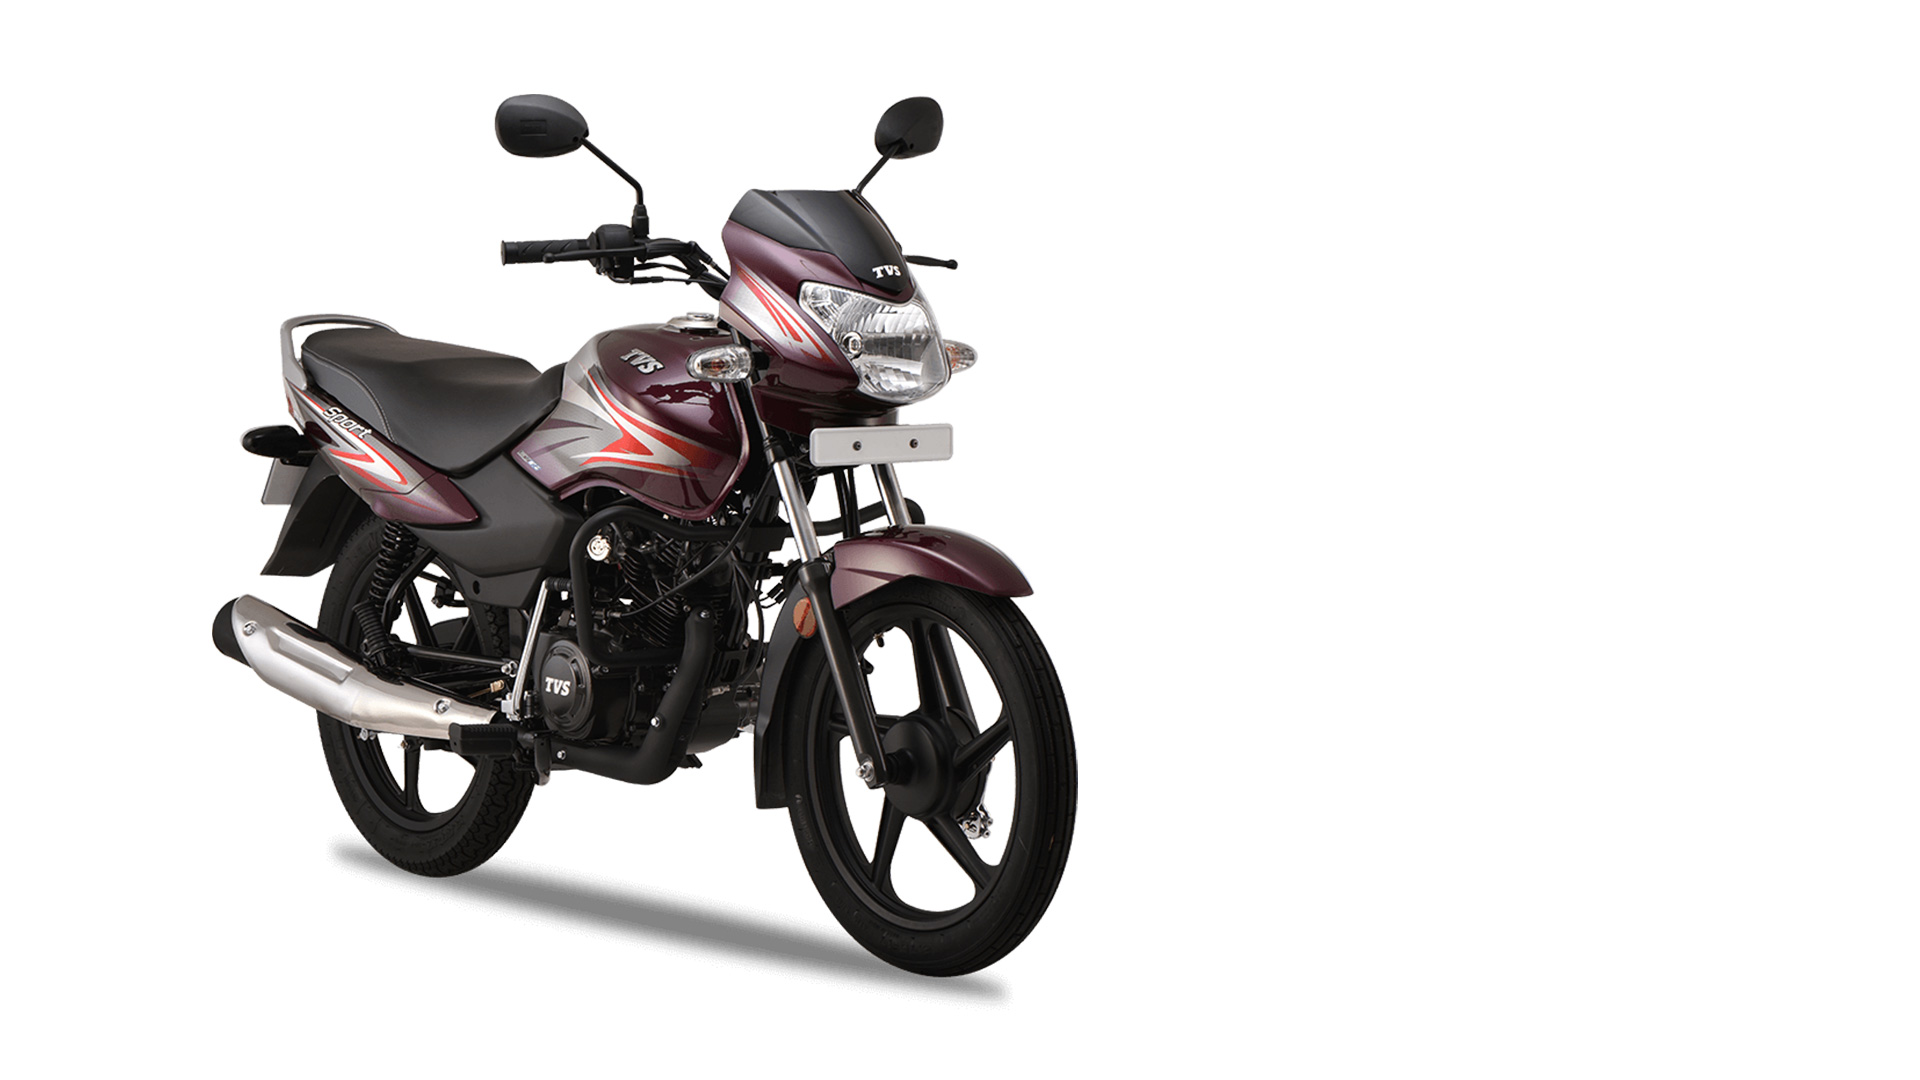 Tvs Bike New Model 2020 Price In India